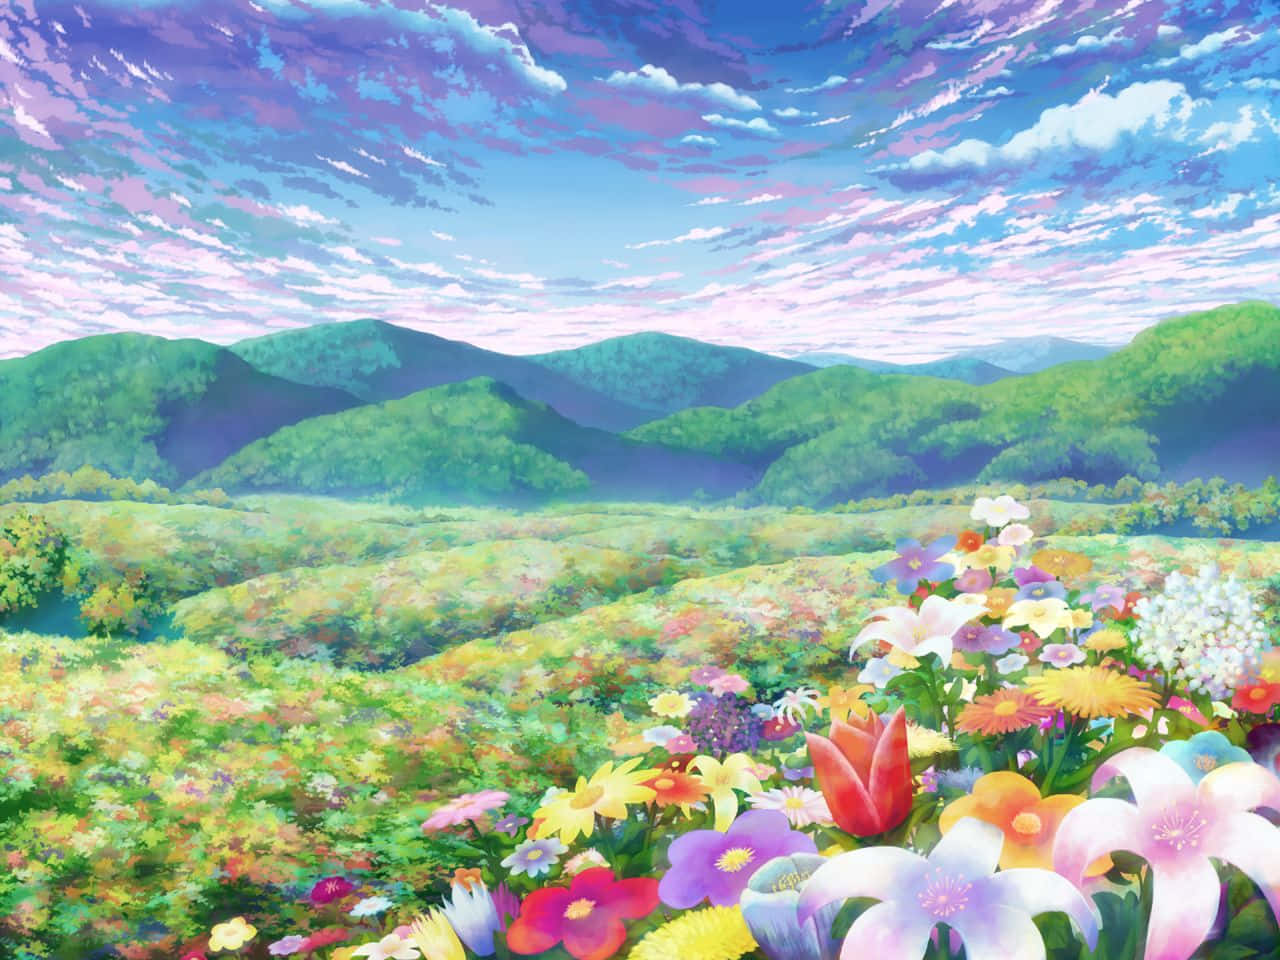 Einewunderschöne Blume Geschmückt Mit Kunstvollen, Von Anime Inspirierten Designs. Wallpaper